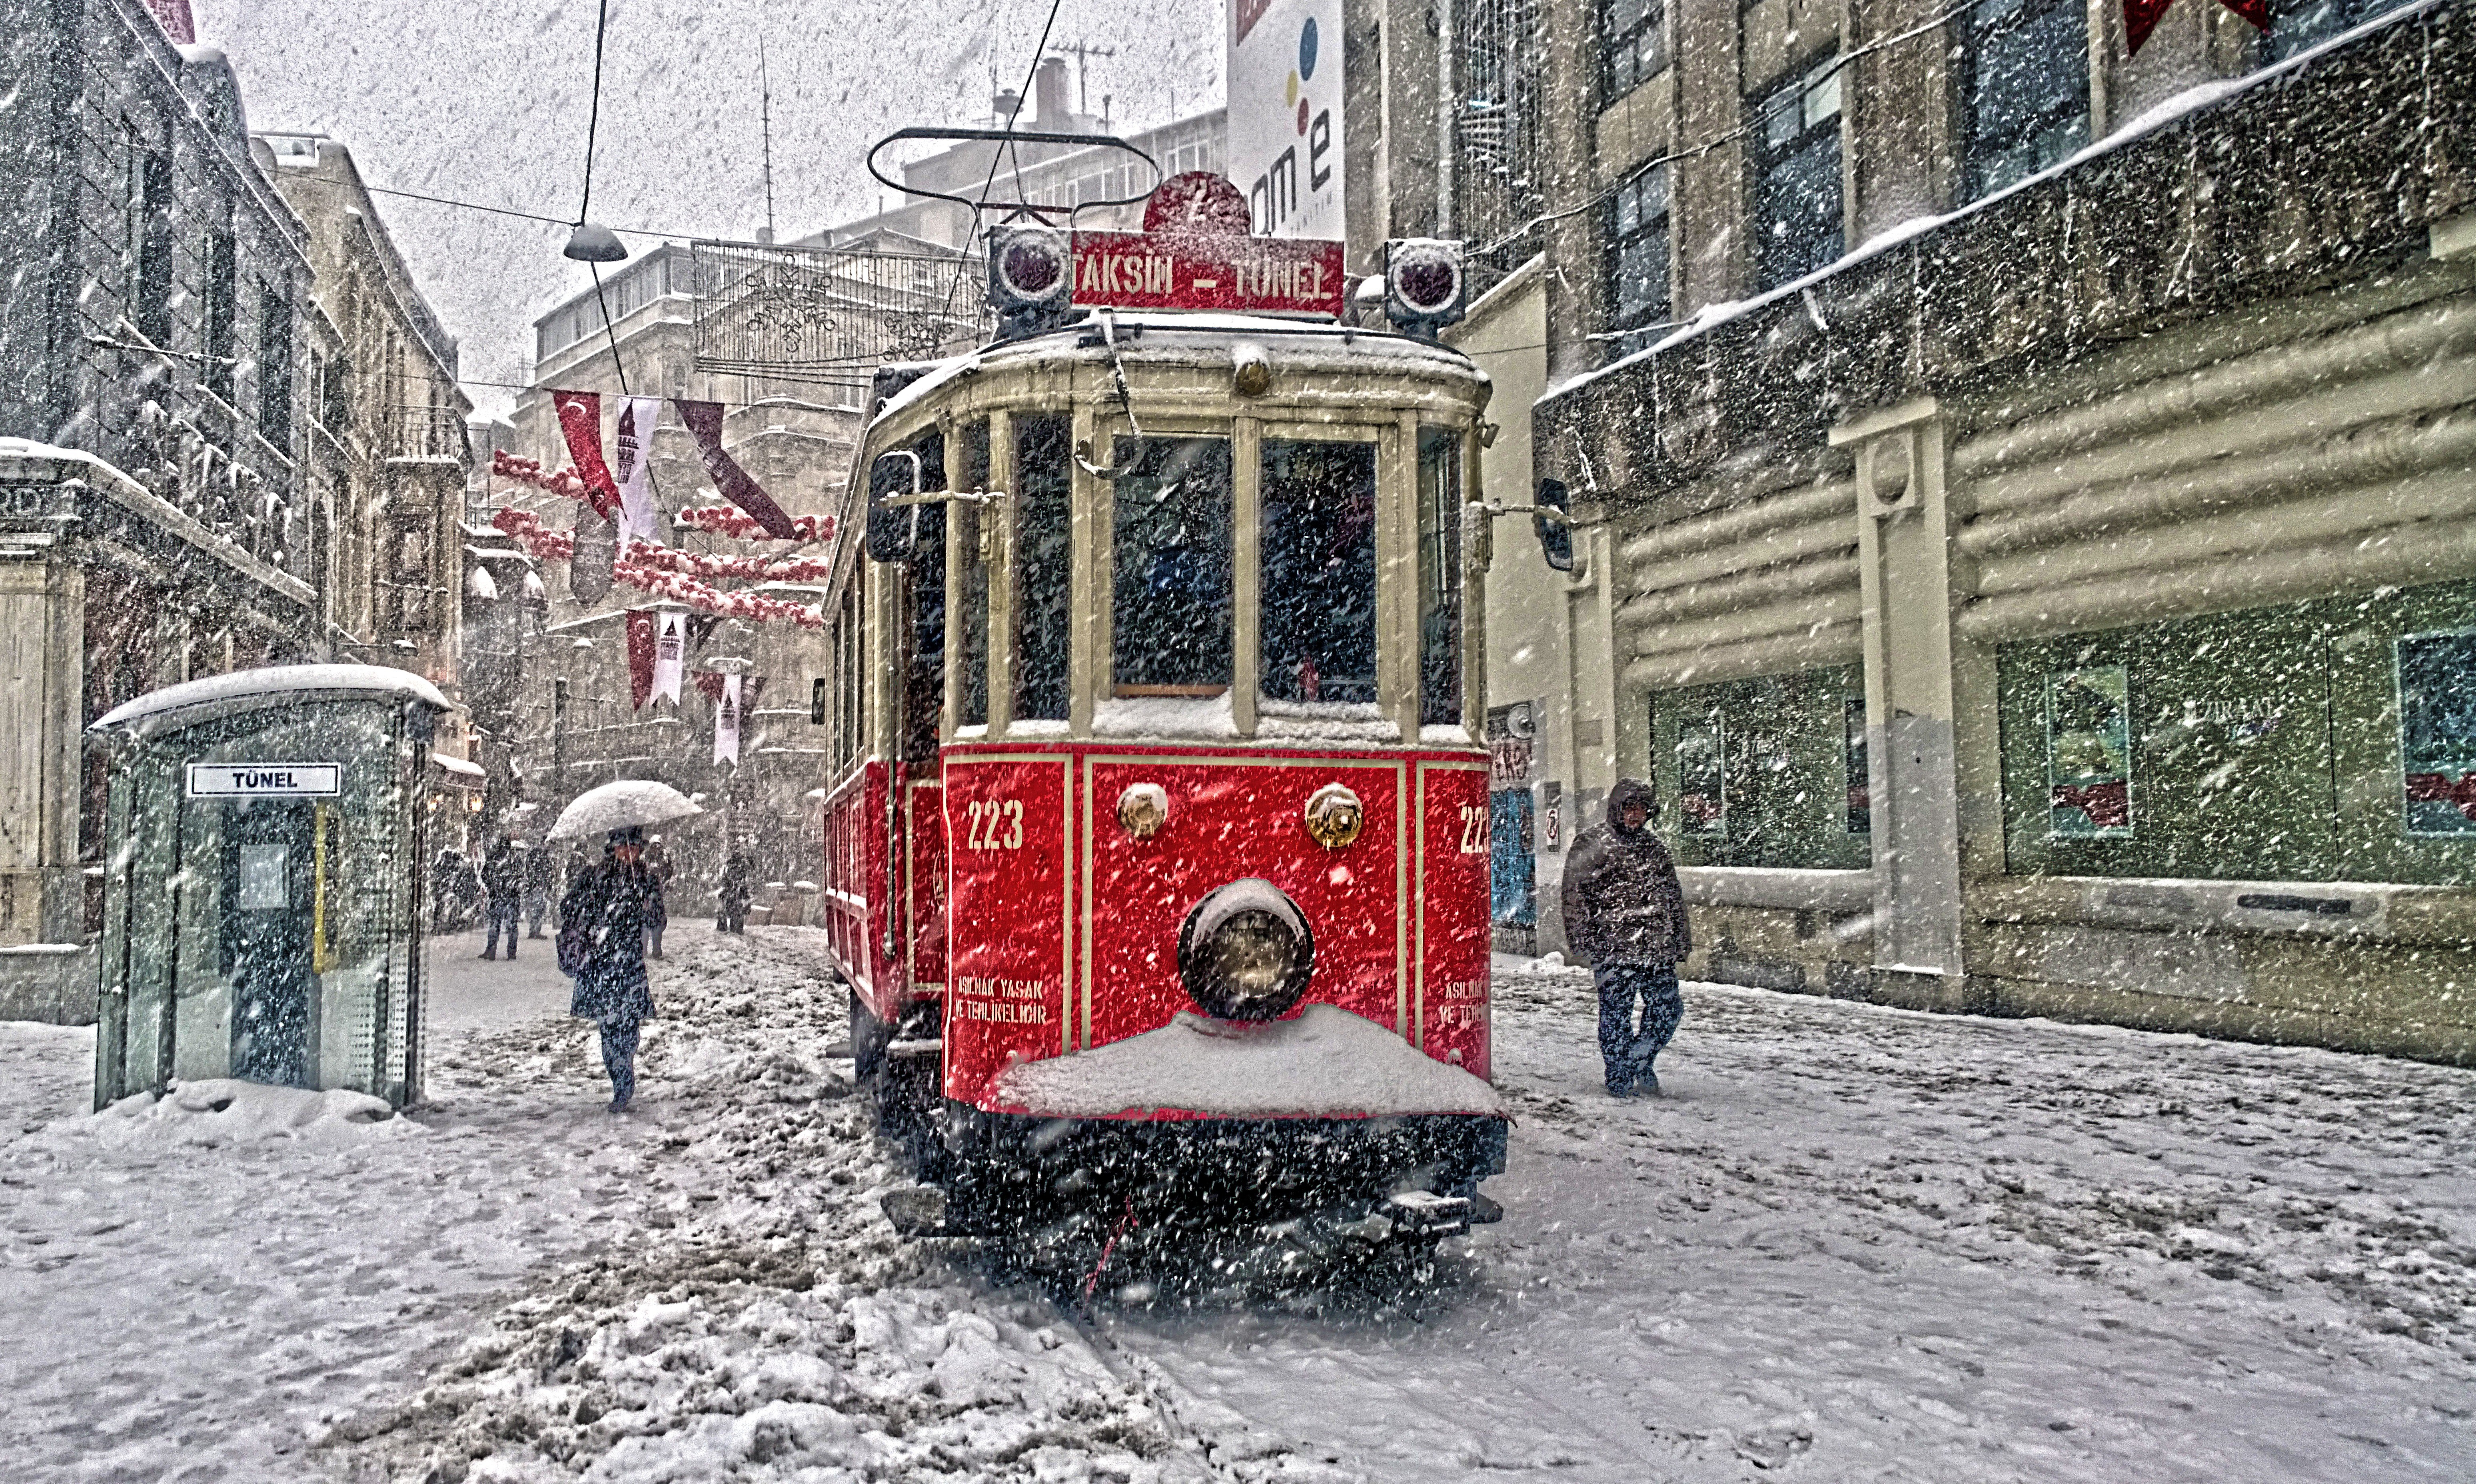 免费照片土耳其伊斯坦布尔塔克西姆的古董电车在冬季天气中的表现